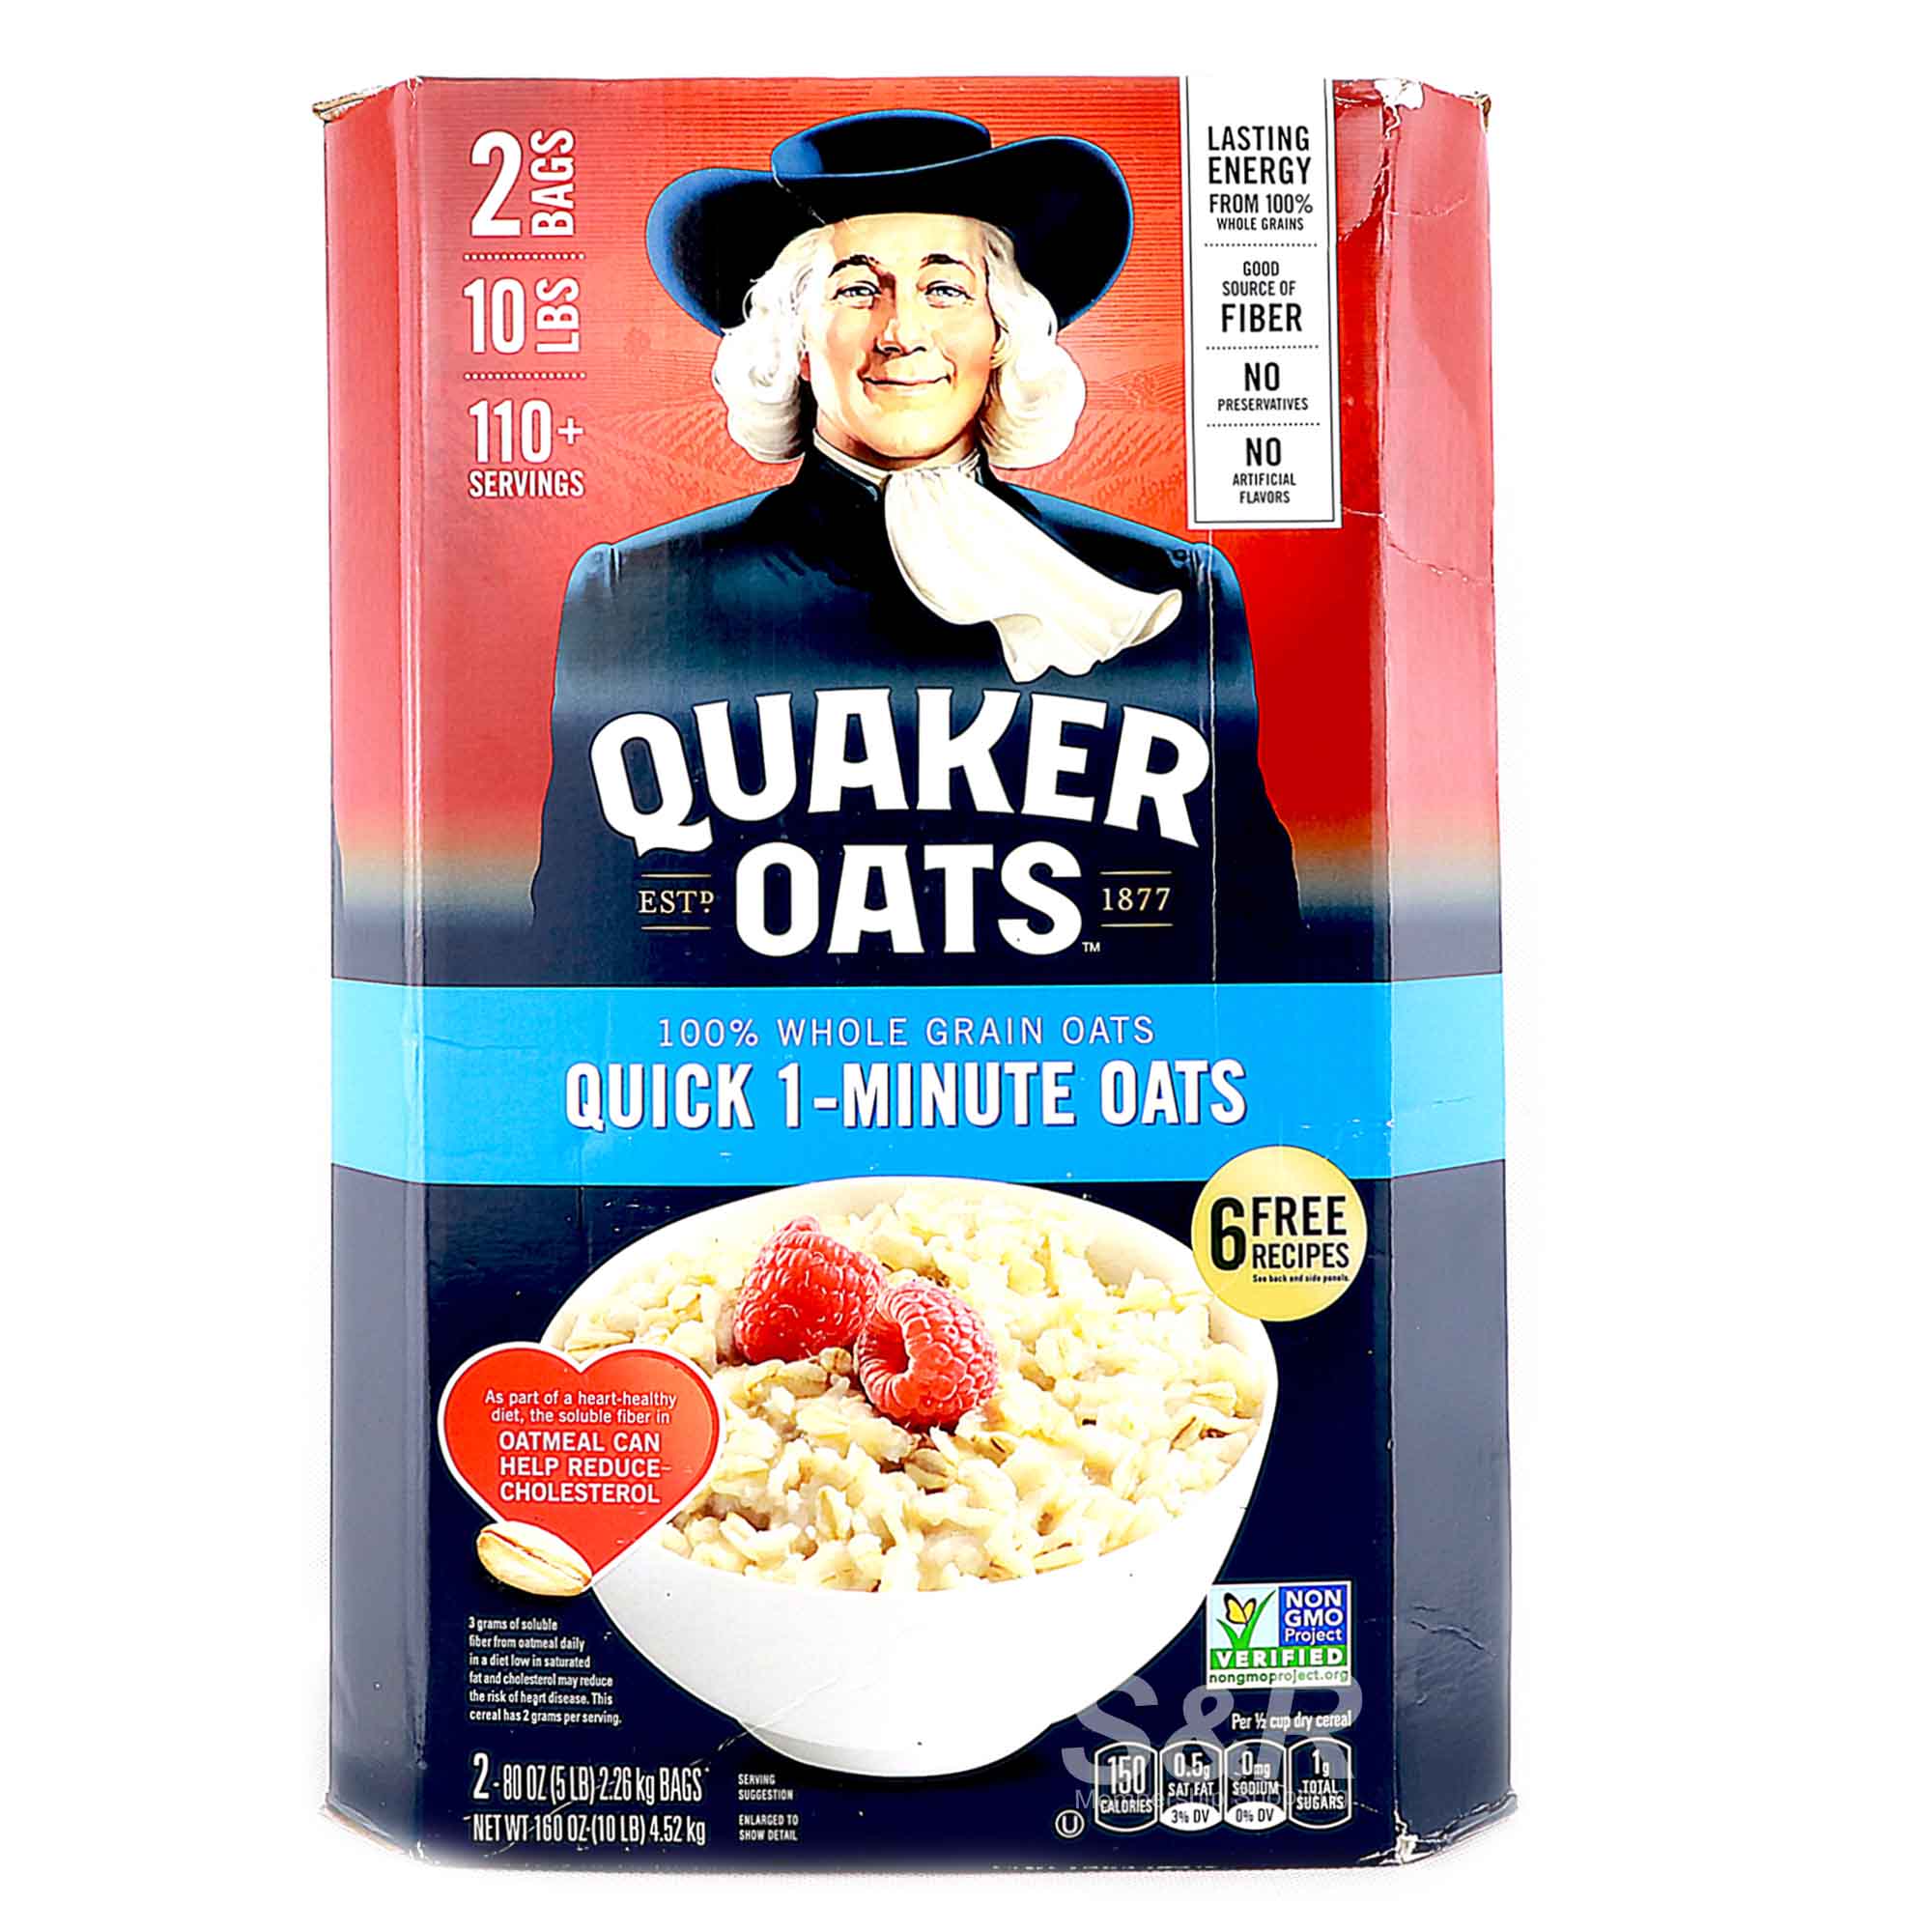 Quaker Oats Quick 1-Minute Oats 4.52kg